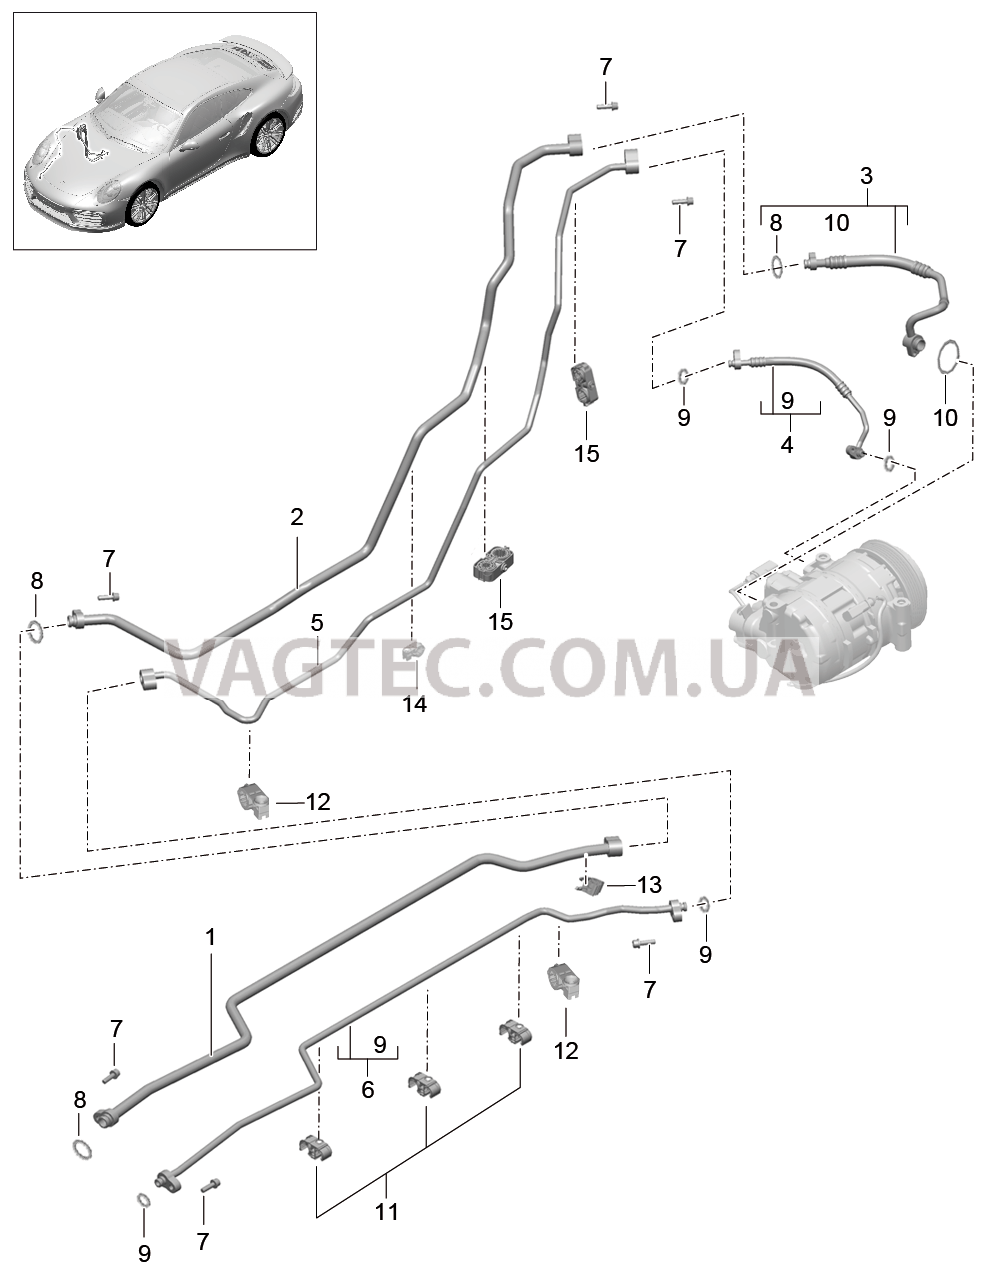 813-027 Канал хладагента, Днище кузова, и, Задняя подвеска, 2. поколение для PORSCHE Porsche991Turbo 2014-2017USA